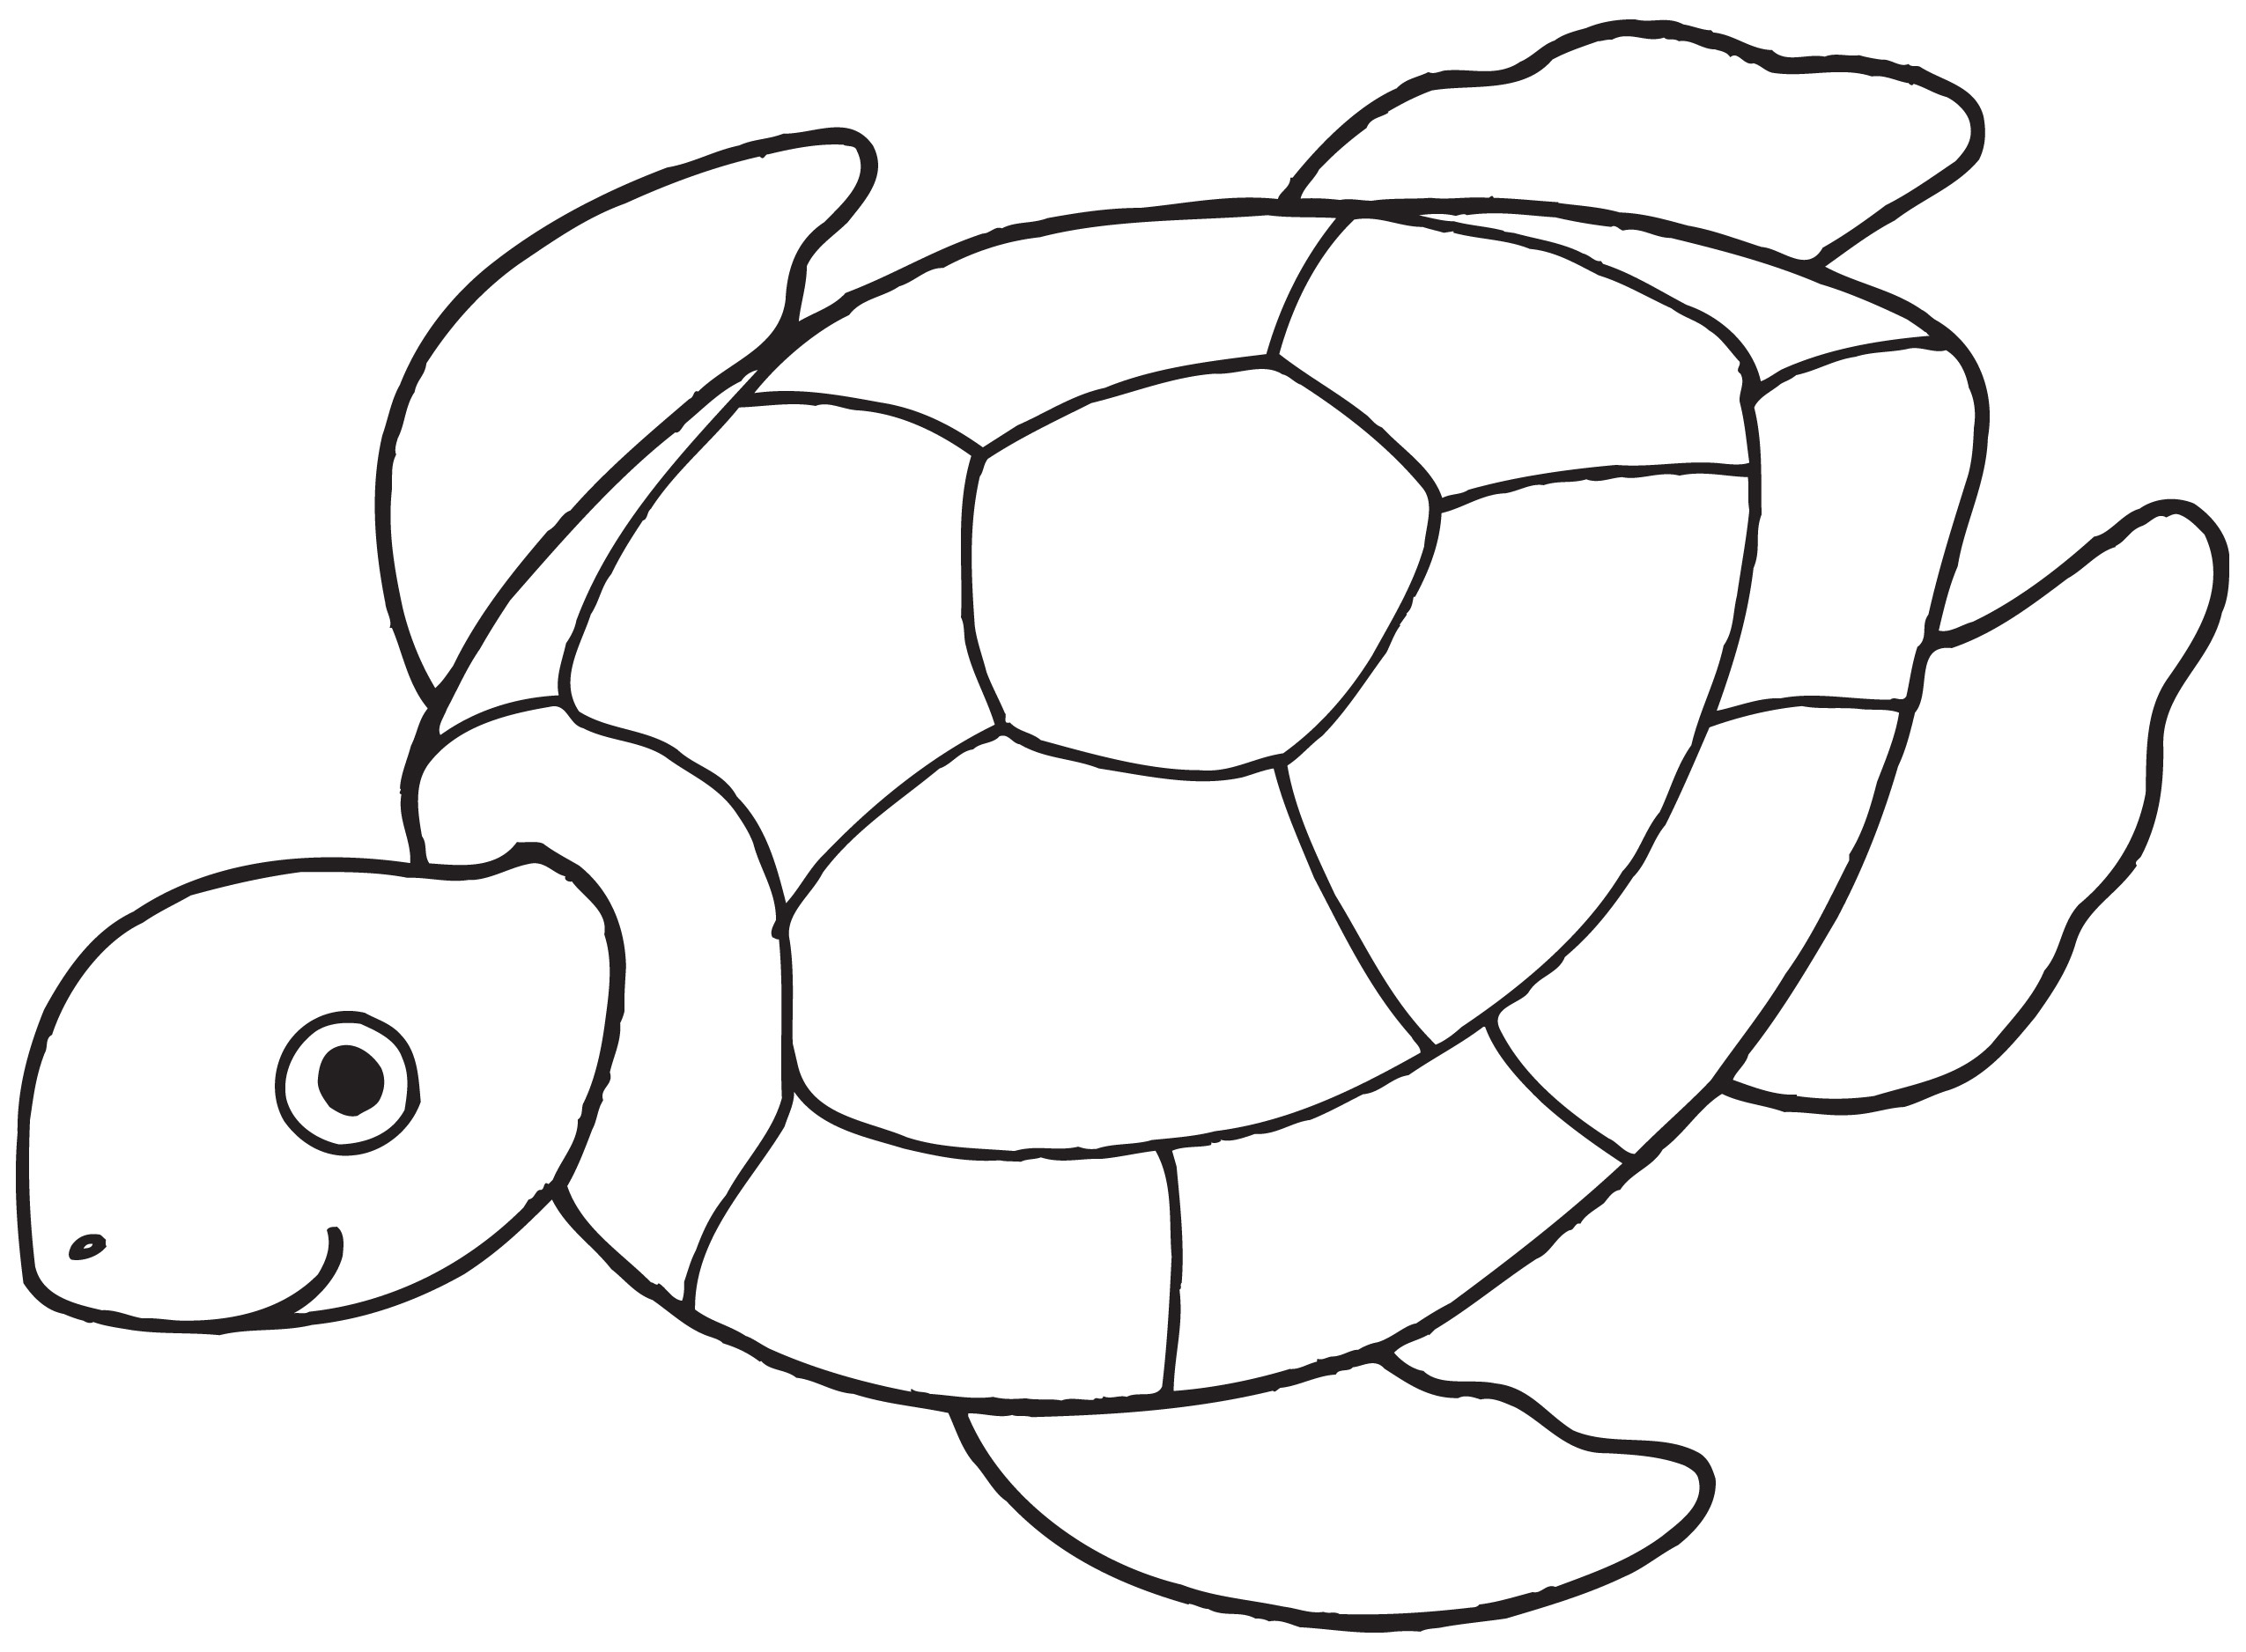 Sea turtle outline.